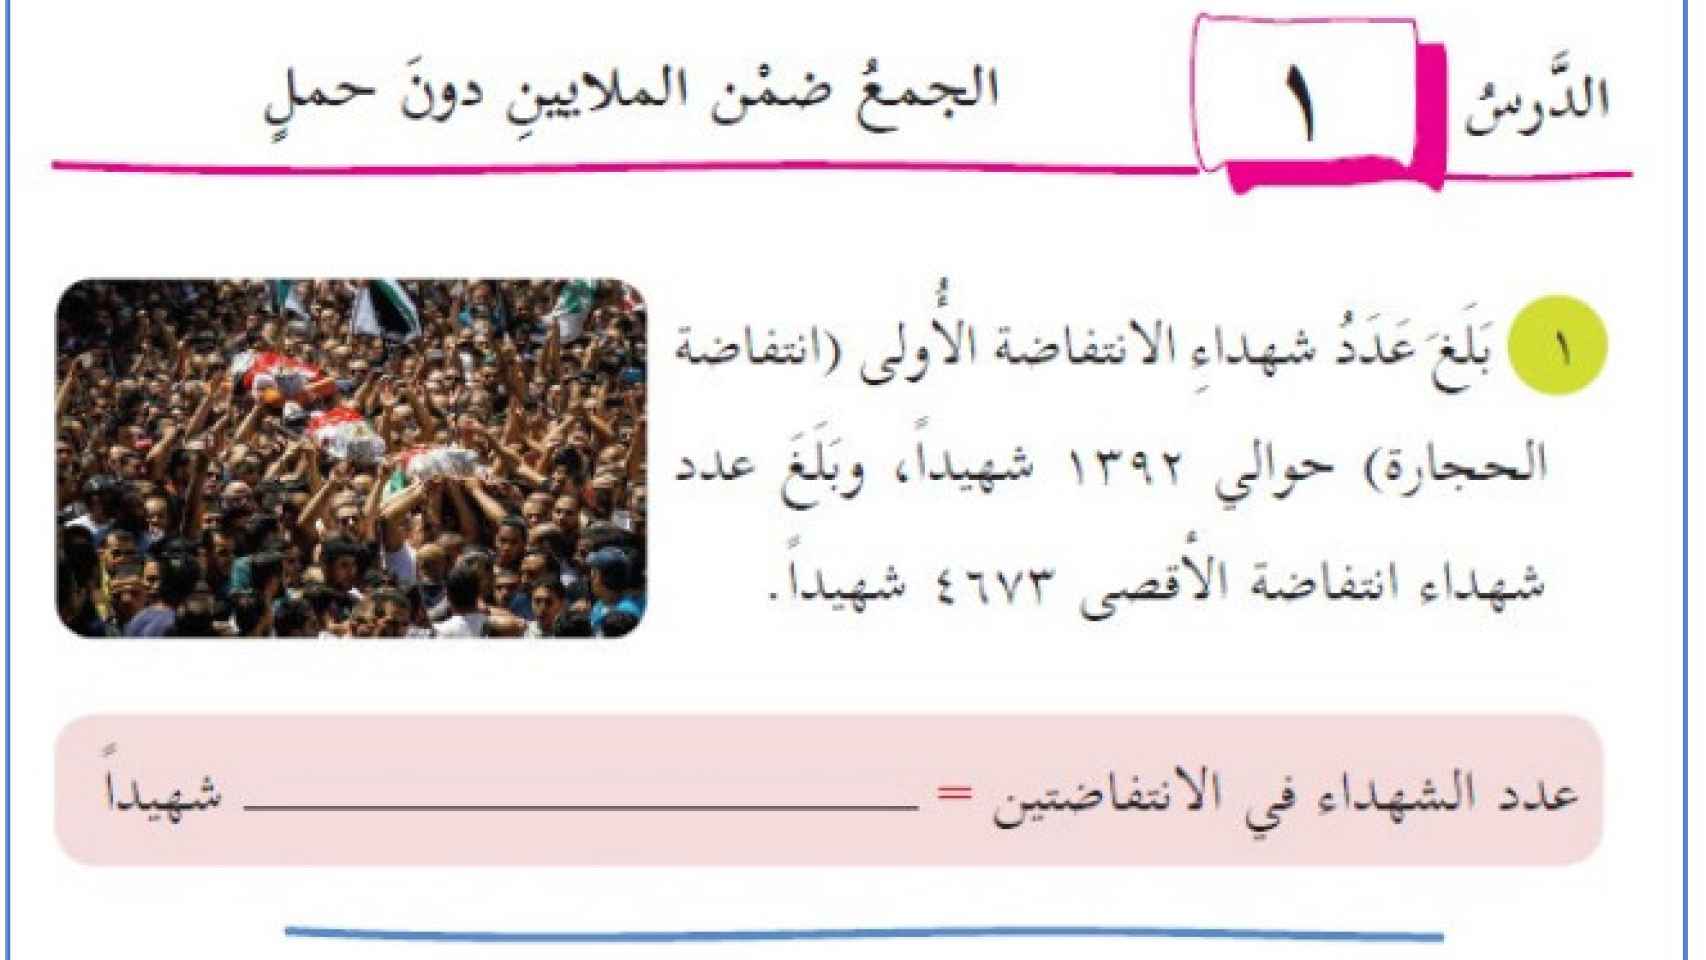 Ejercicio de cálculo donde se cuenta el número de ‘mártires’ por bombas suicidas.